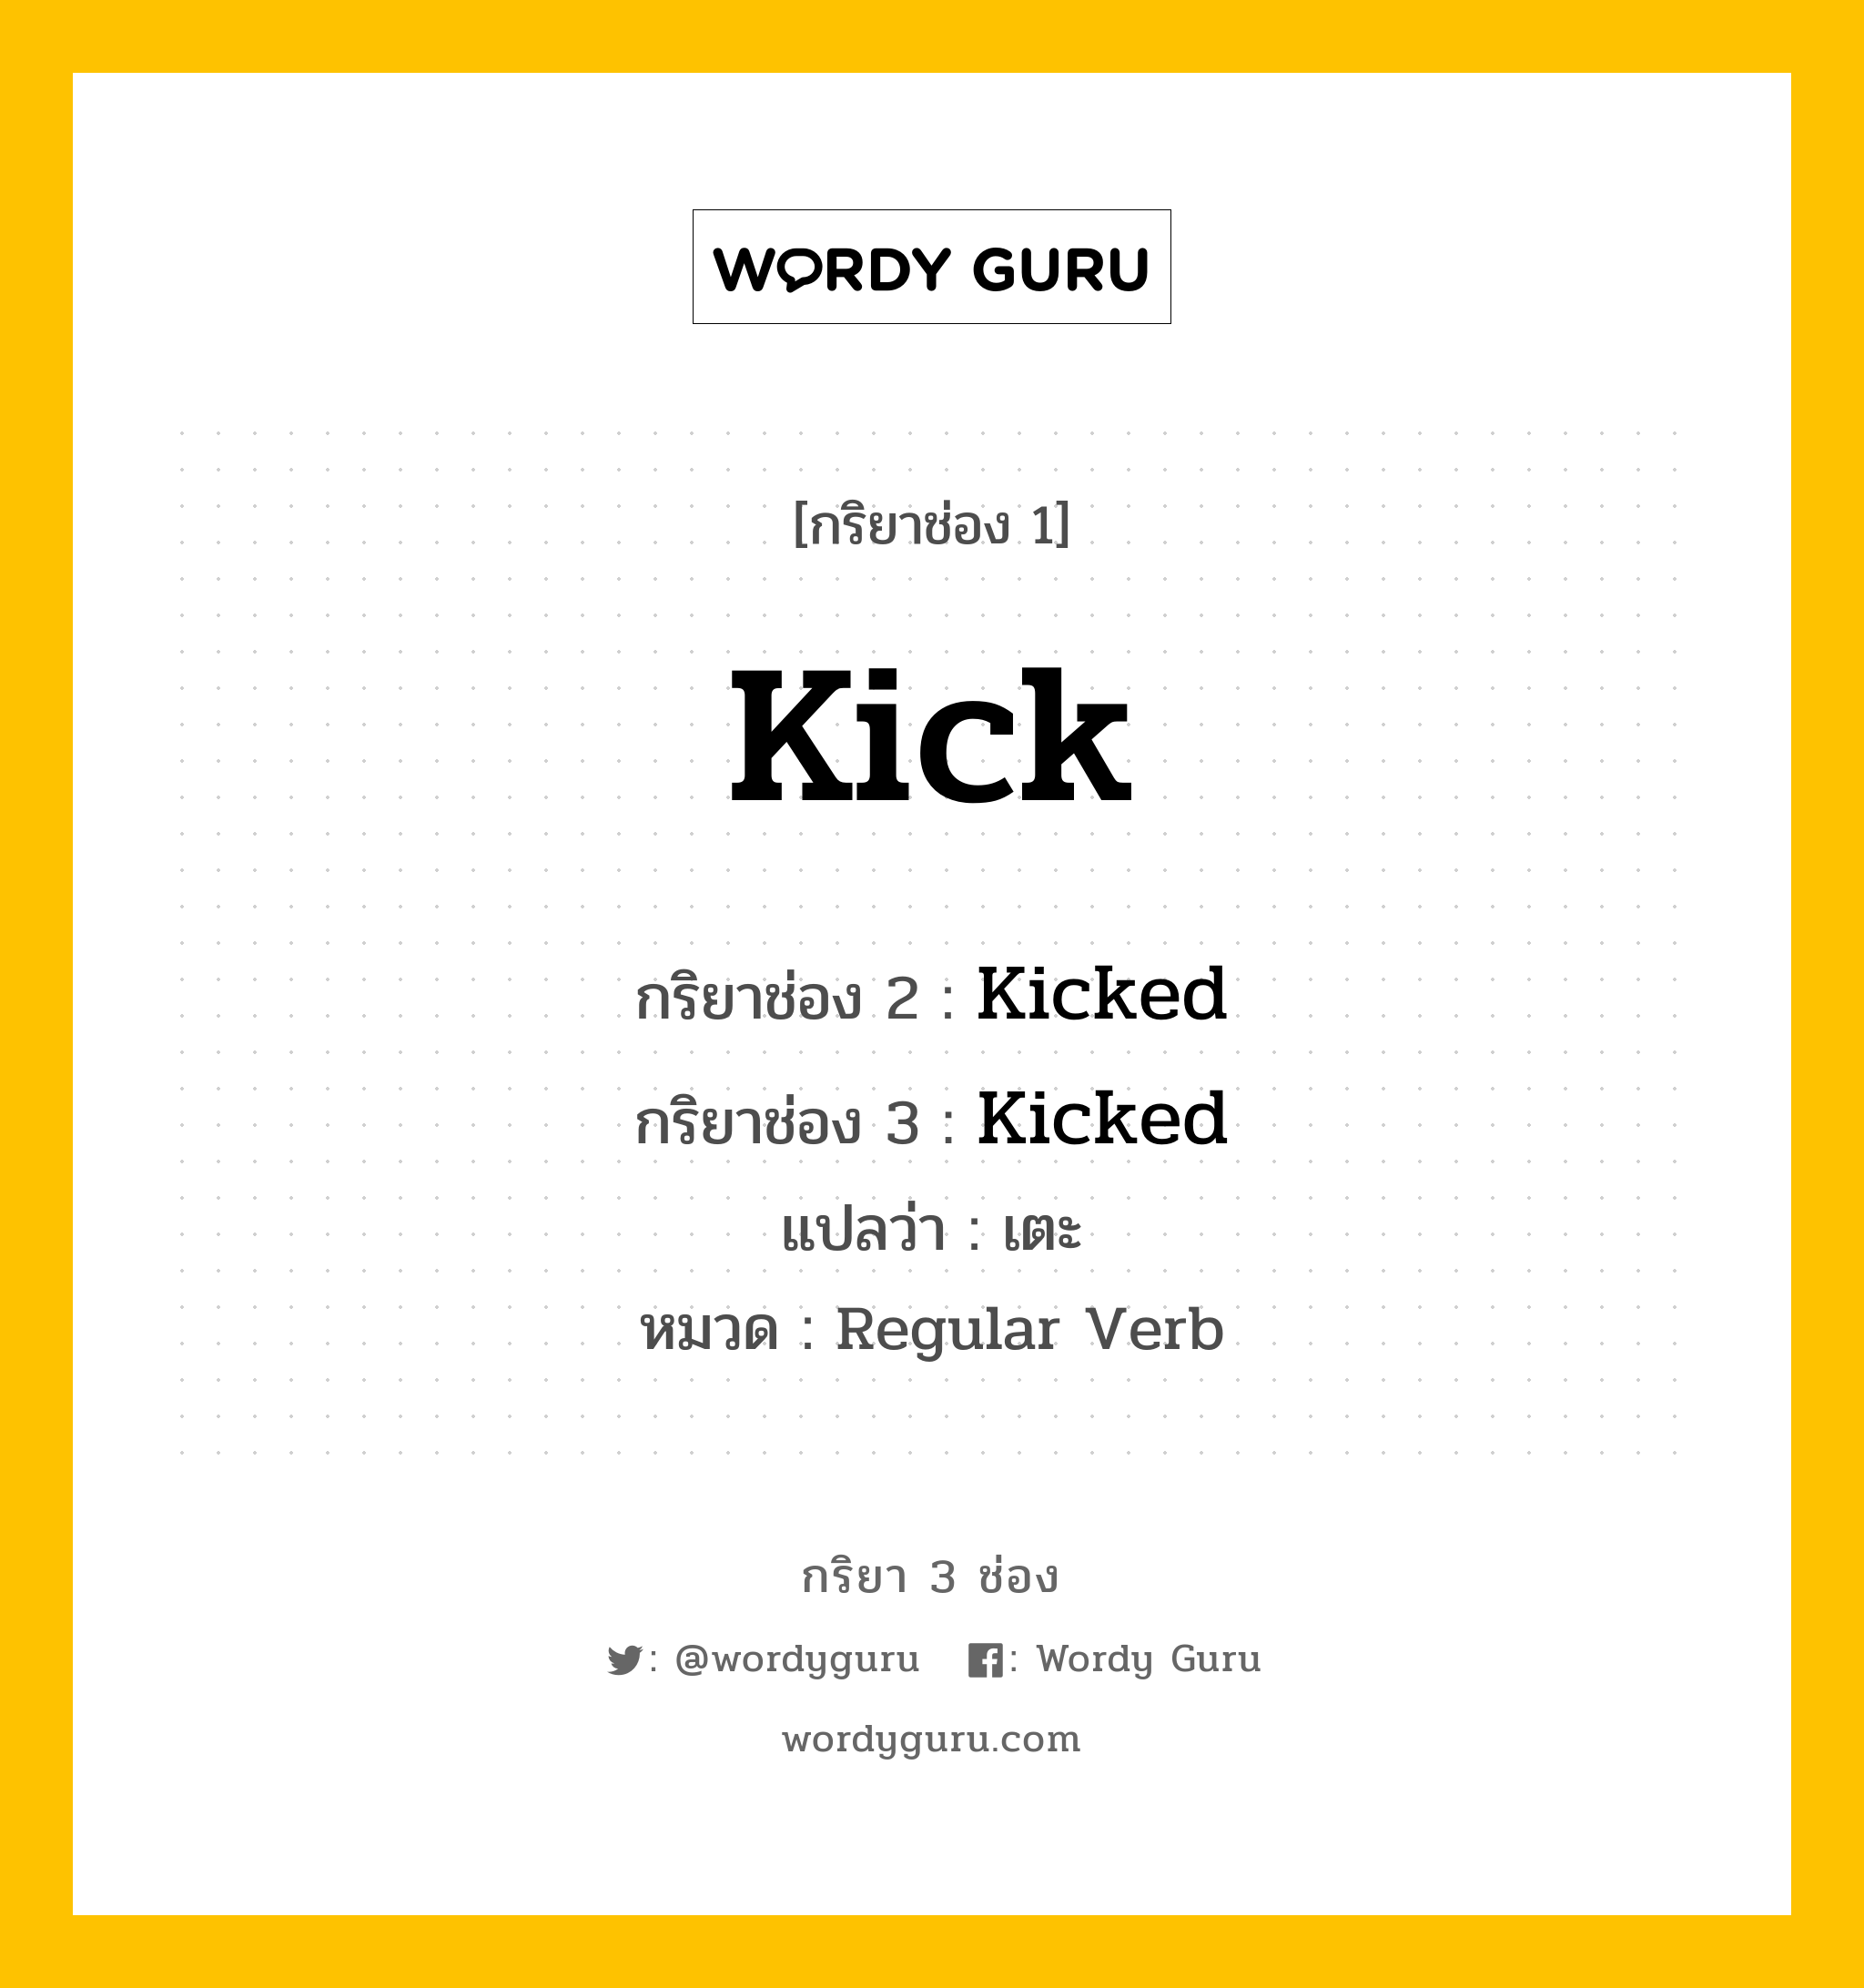 กริยา 3 ช่อง: Kick ช่อง 2 Kick ช่อง 3 คืออะไร, กริยาช่อง 1 Kick กริยาช่อง 2 Kicked กริยาช่อง 3 Kicked แปลว่า เตะ หมวด Regular Verb หมวด Regular Verb